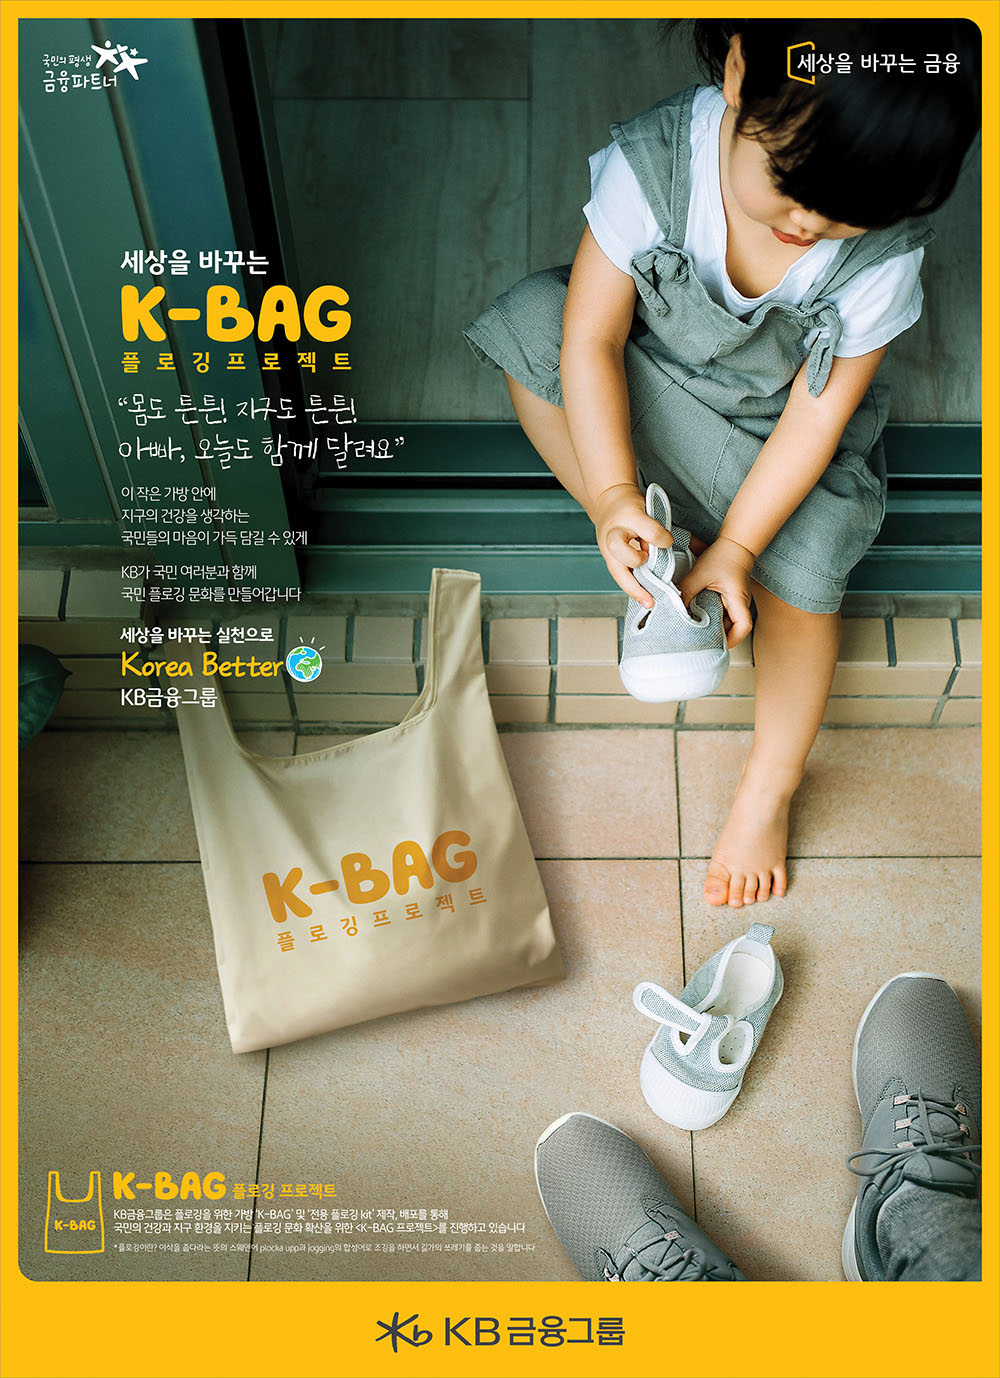 K-Bag 플로깅 프로젝트 - ③